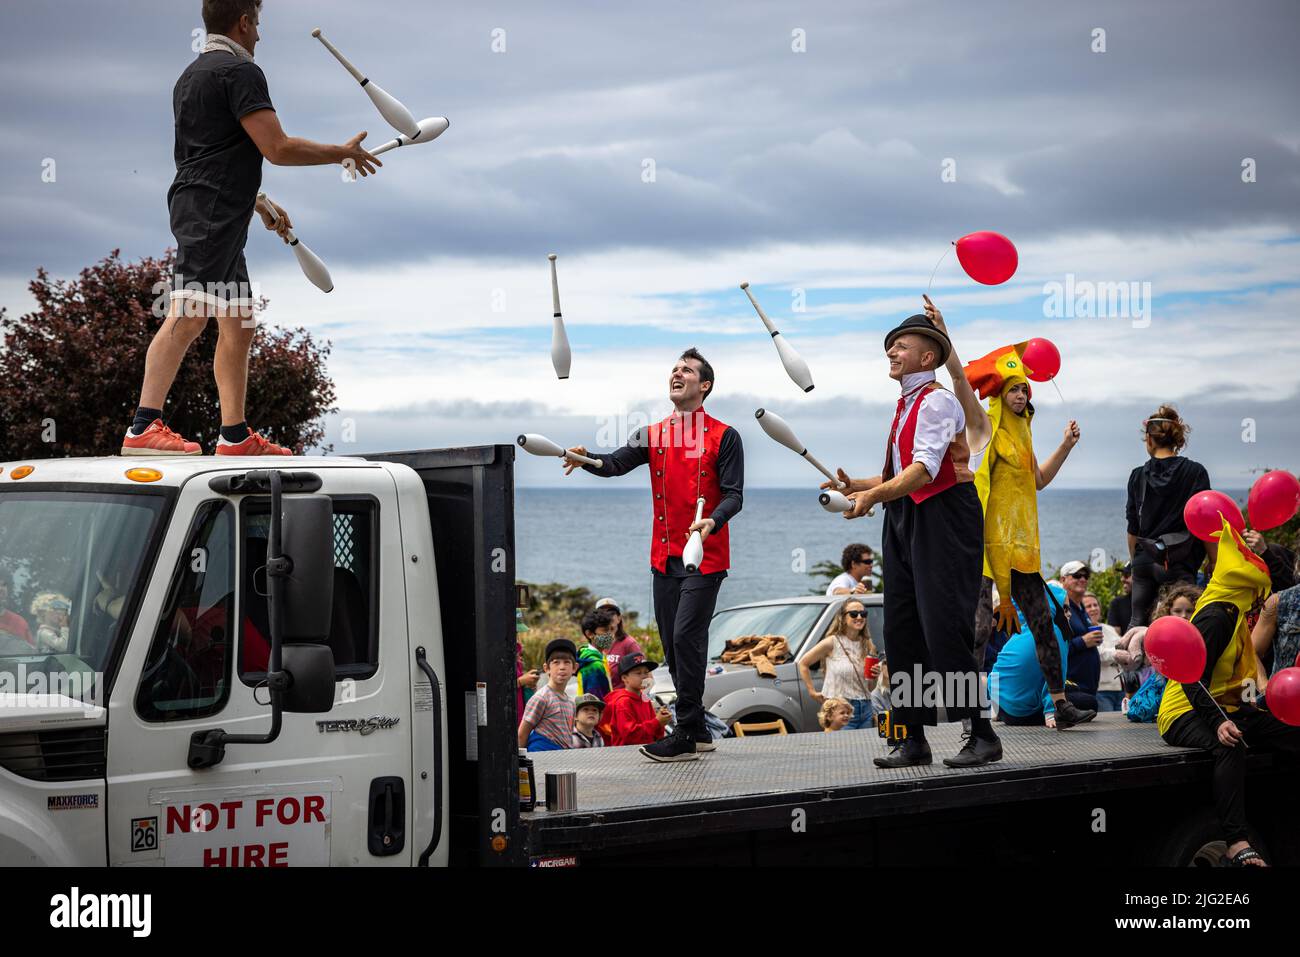 Jongleure jonglieren auf einem Festwagen während der Parade im Juli in Mendocino CA Stockfoto